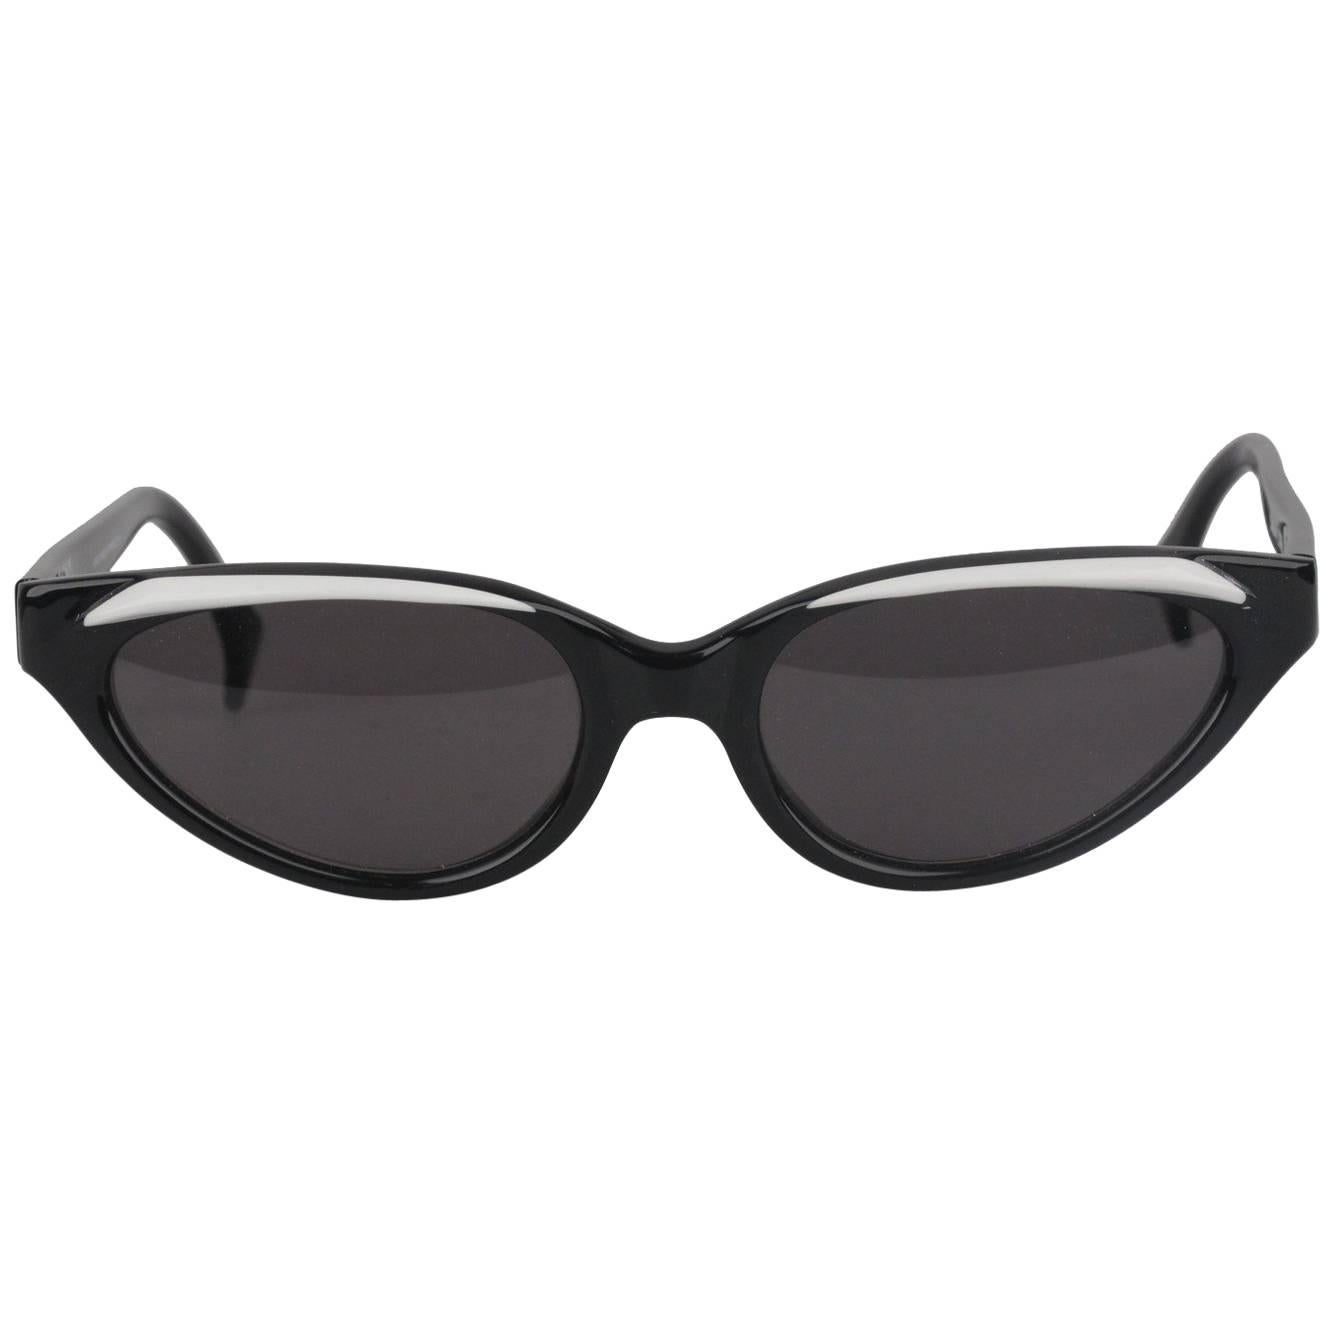 ALAIN MIKLI Paris Vintage D304 Sunglasses for 101 Dalmatians 1996